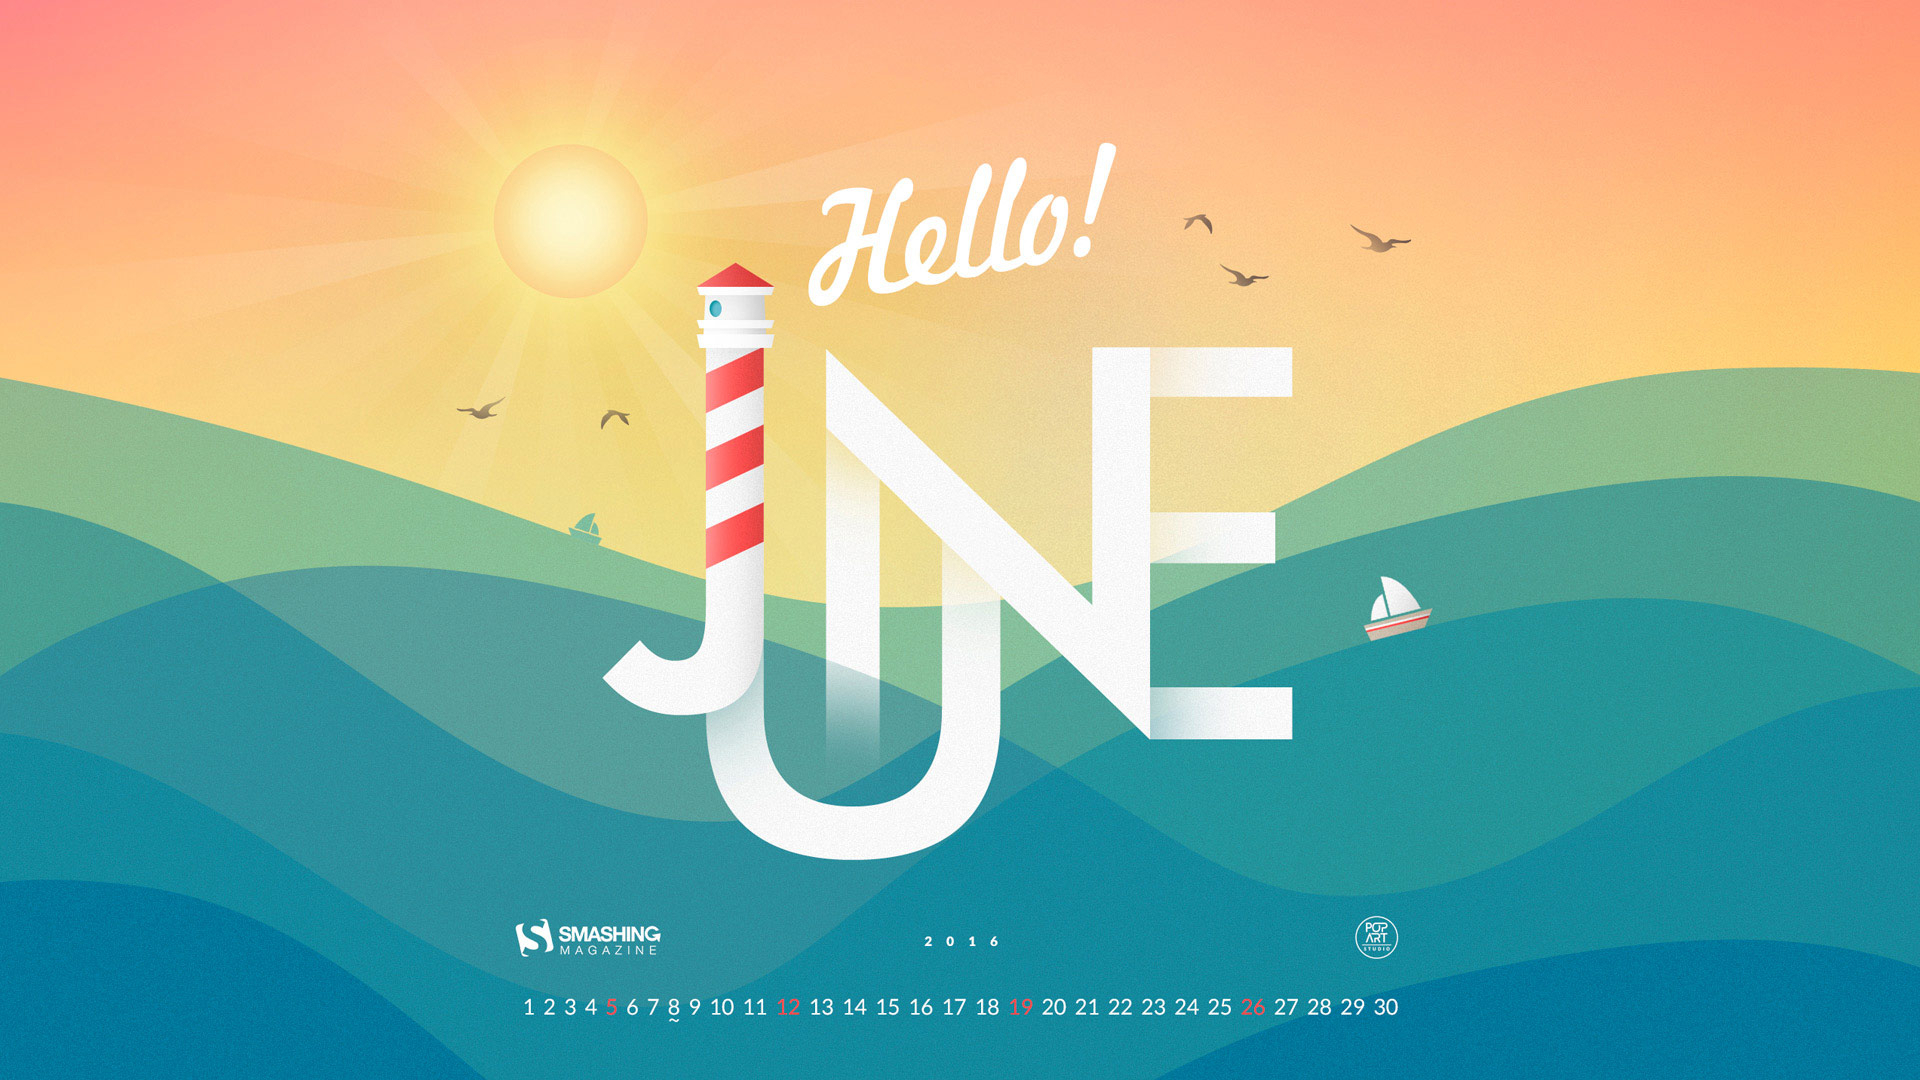 Desktop Wallpaper Calendar  Iunie 2016 Touchofadream intended for Calendar De Frumusete